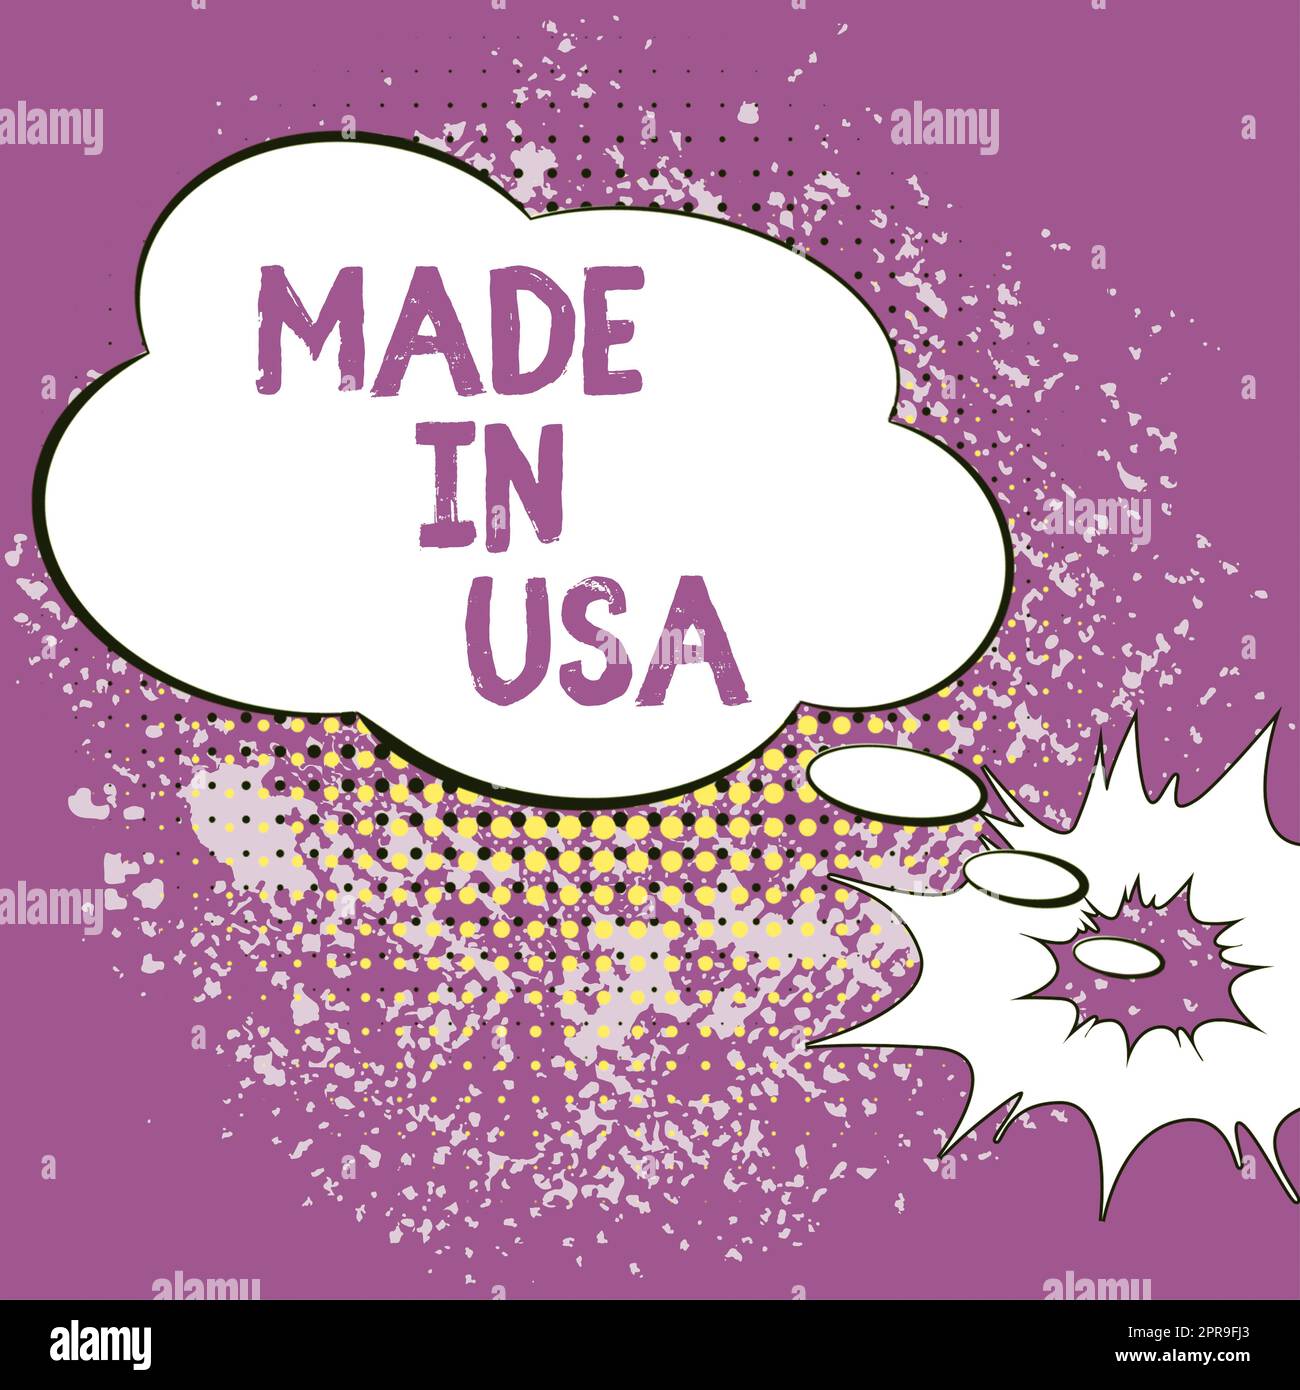 Didascalia di testo Made in USA. Vetrina aziendale marchio americano prodotto locale fabbricato negli Stati Uniti Cloud Thought Bubble con modello per banner Web e pubblicità. Foto Stock